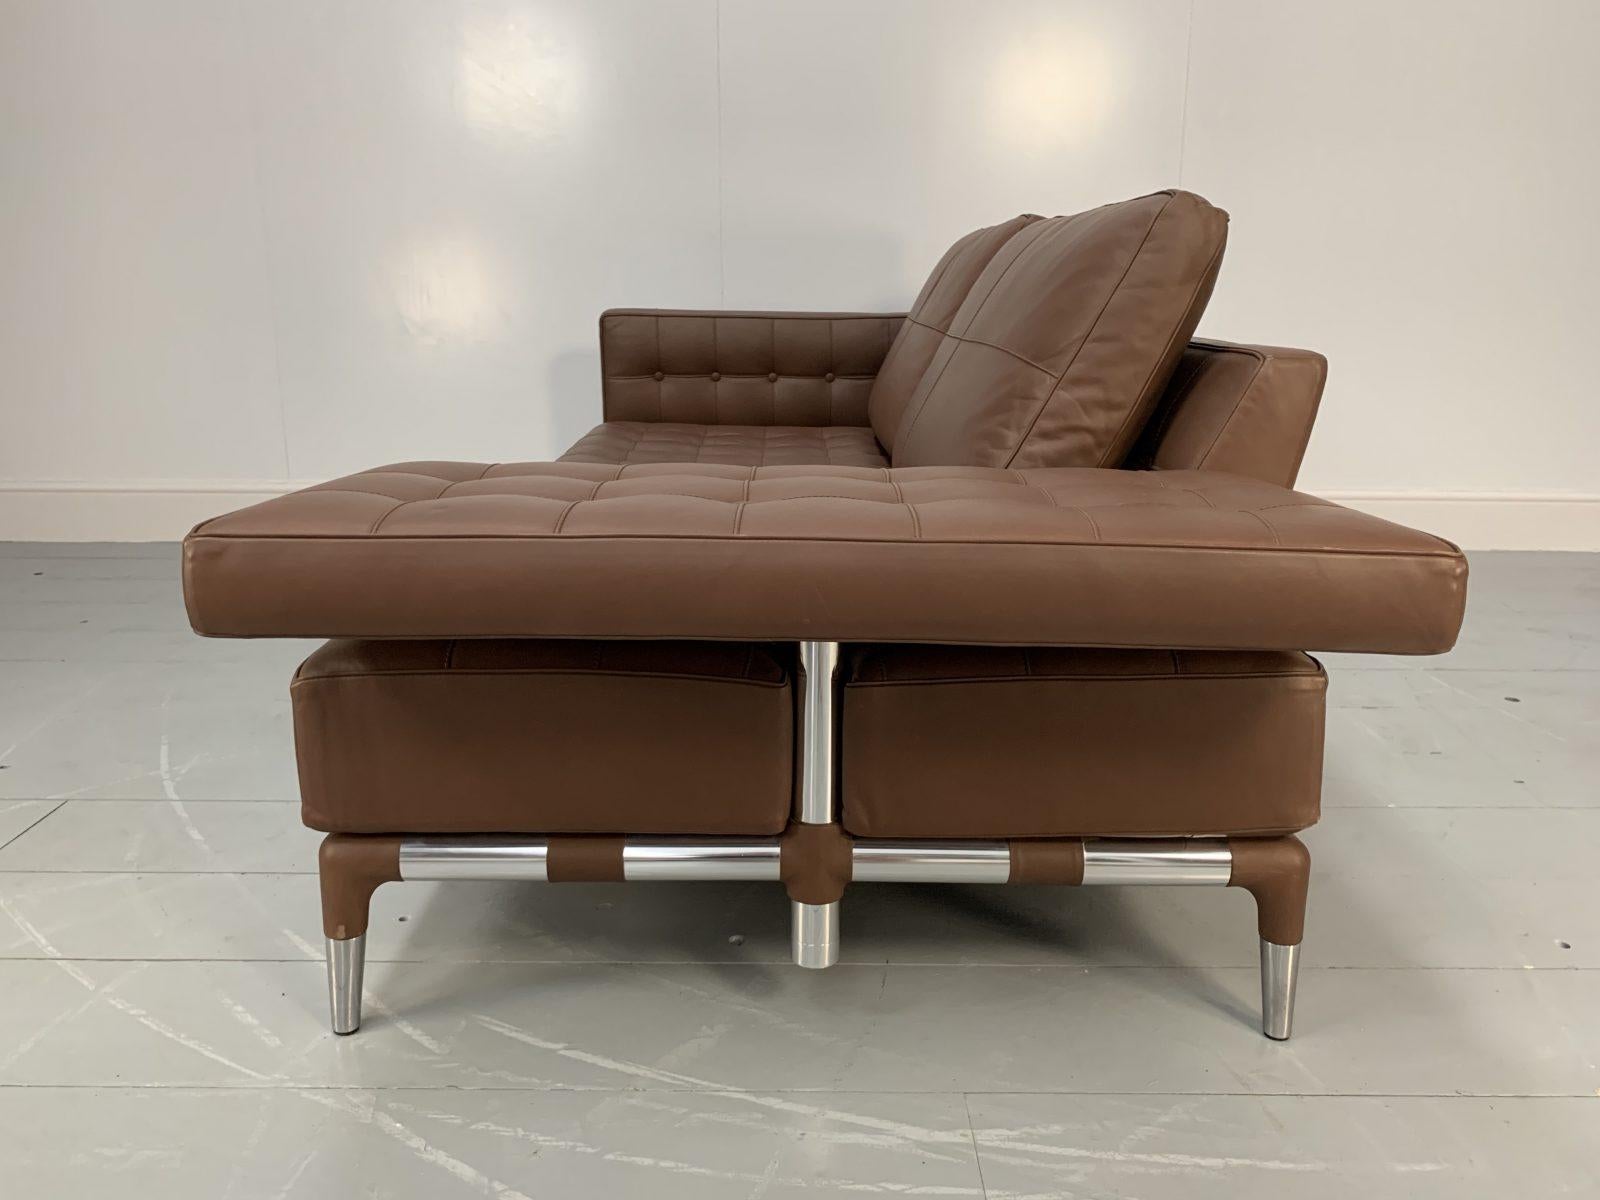 Cassina “241 Prive Divano” Sofa – in Mid-Brown “Pelle” Leather 1